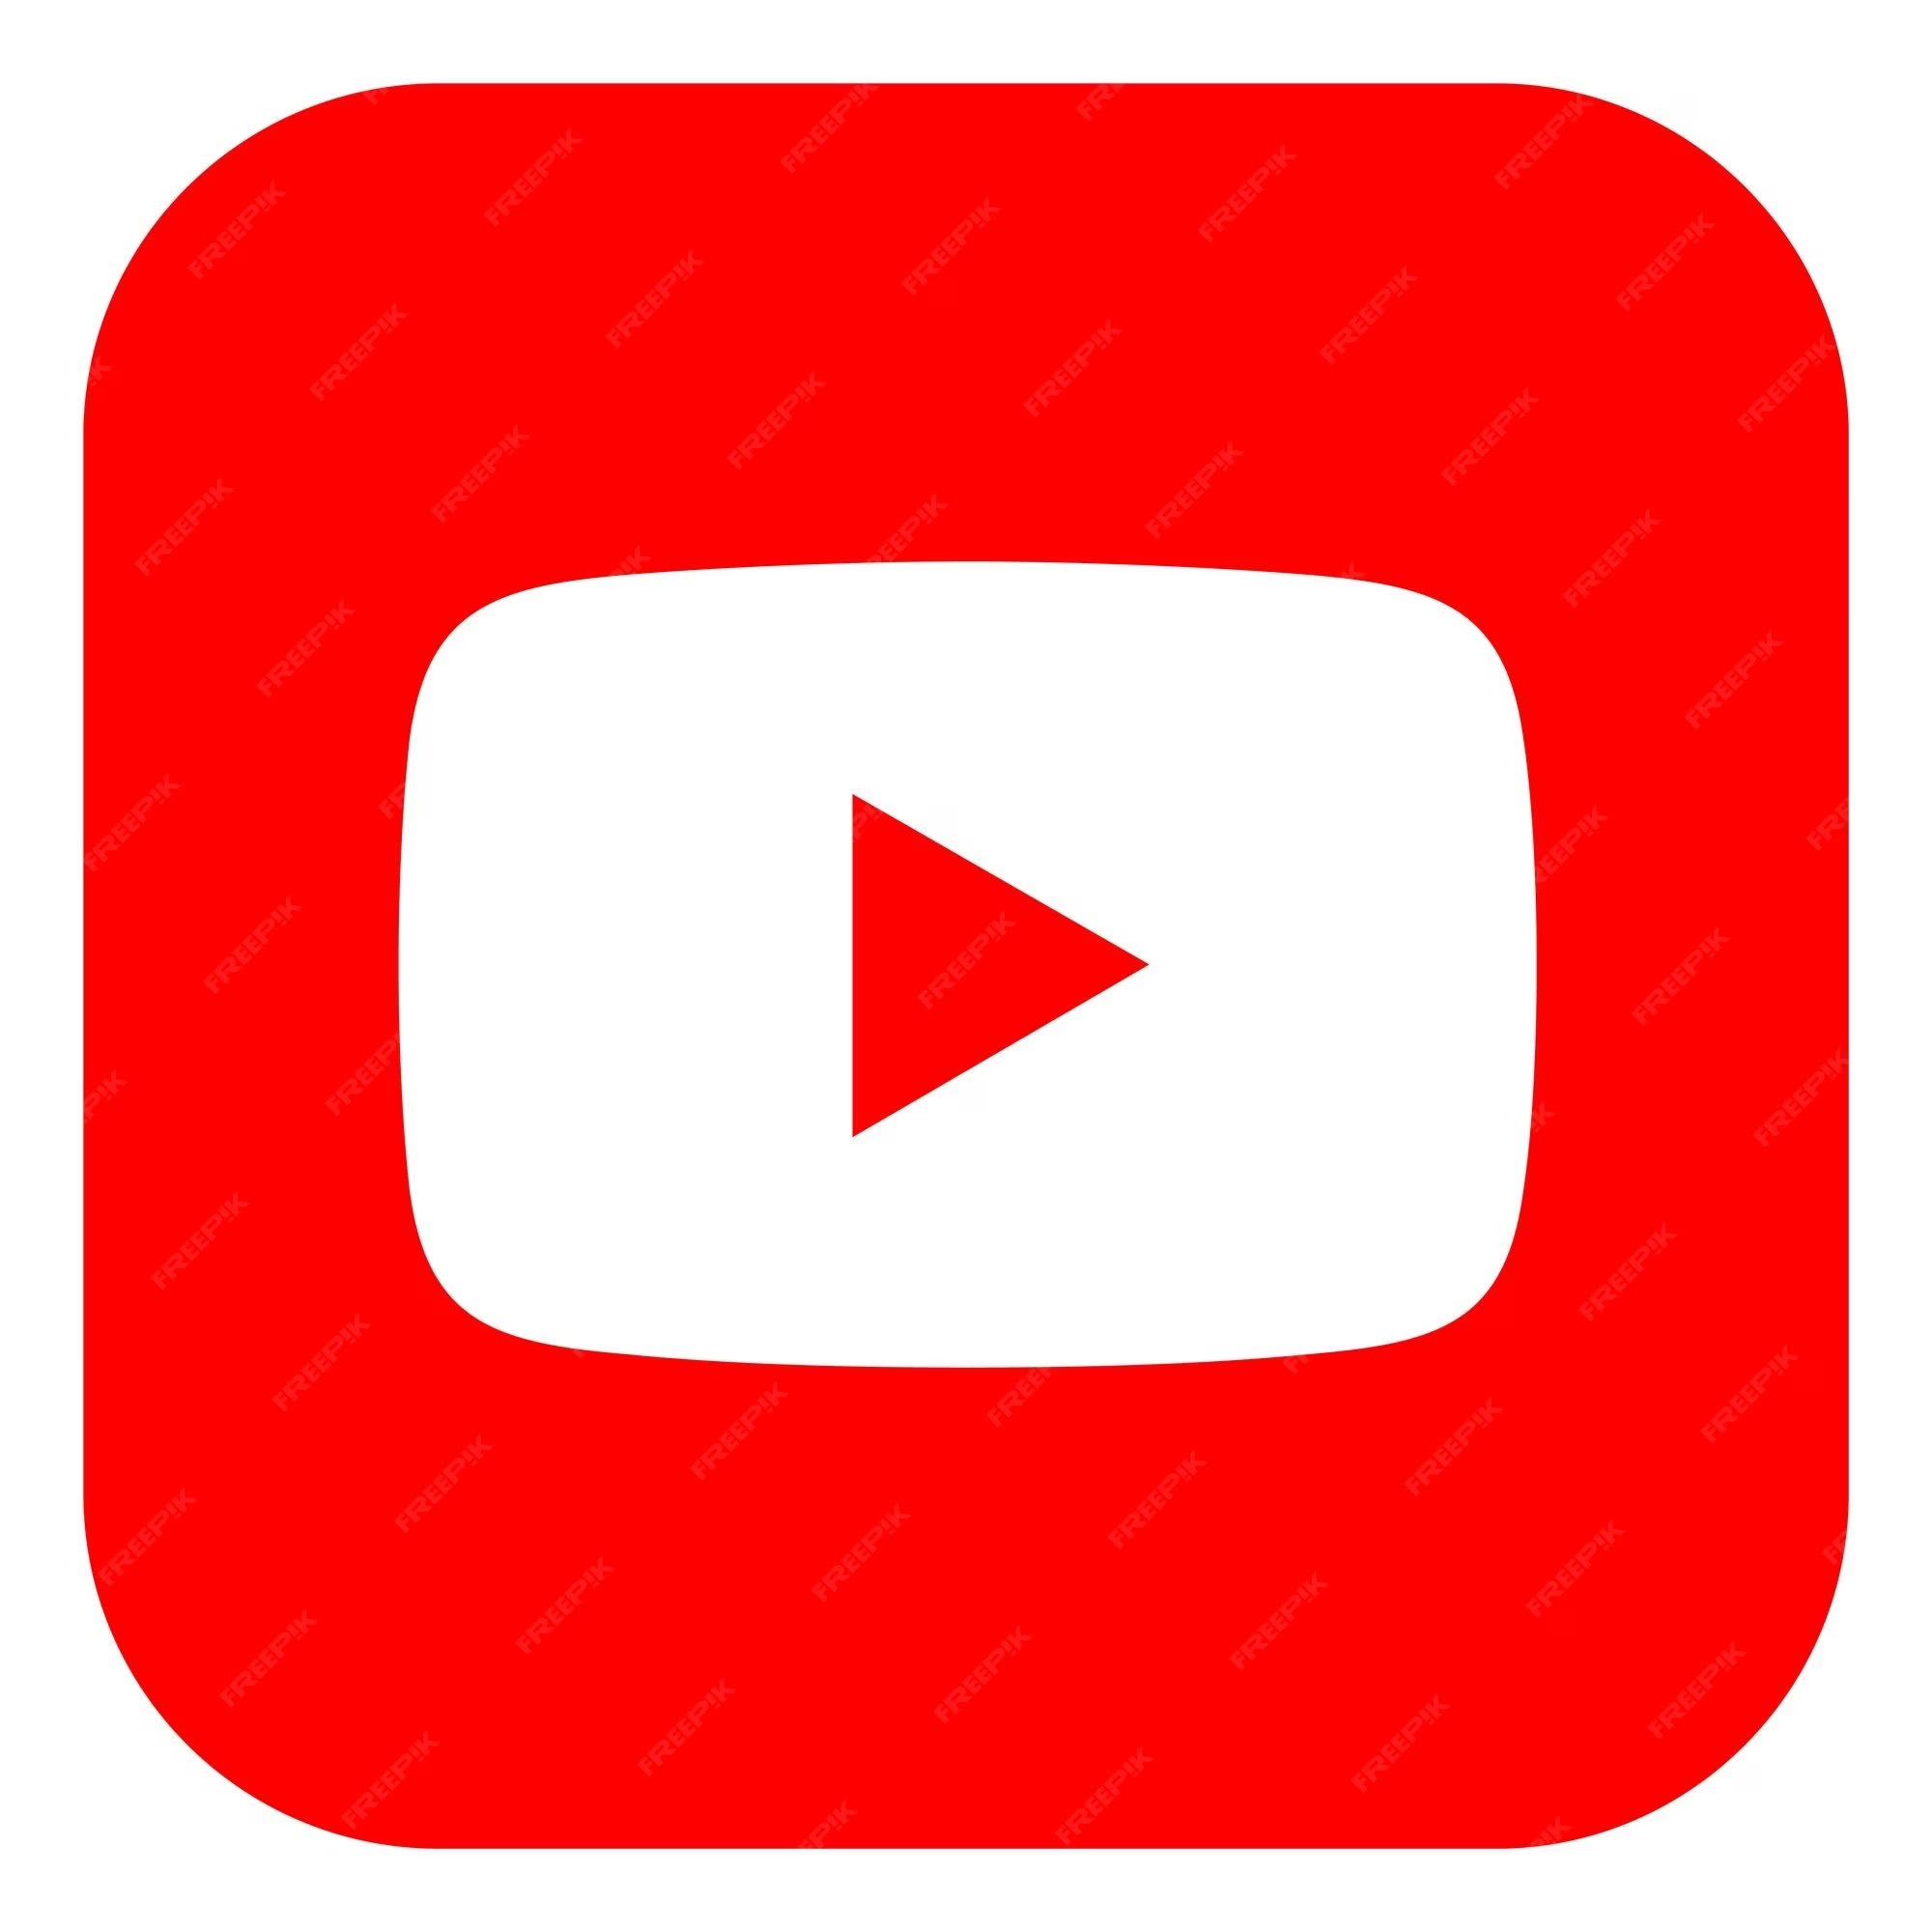 square-youtube-logo-isolated-white-background_469489-911.jpg